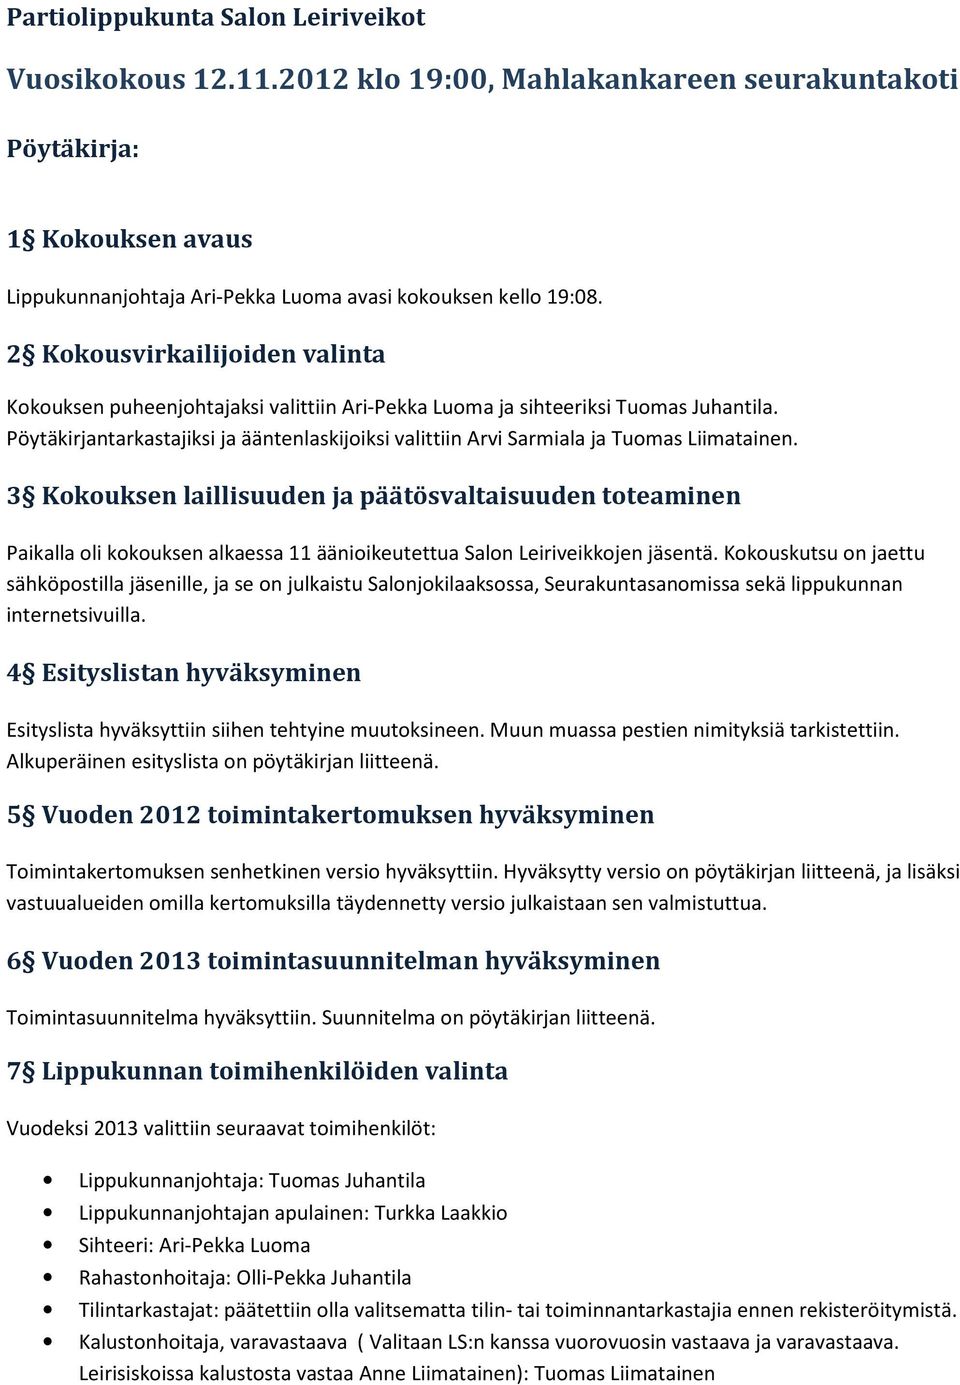 Pöytäkirjantarkastajiksi ja ääntenlaskijoiksi valittiin Arvi Sarmiala ja Tuomas Liimatainen.